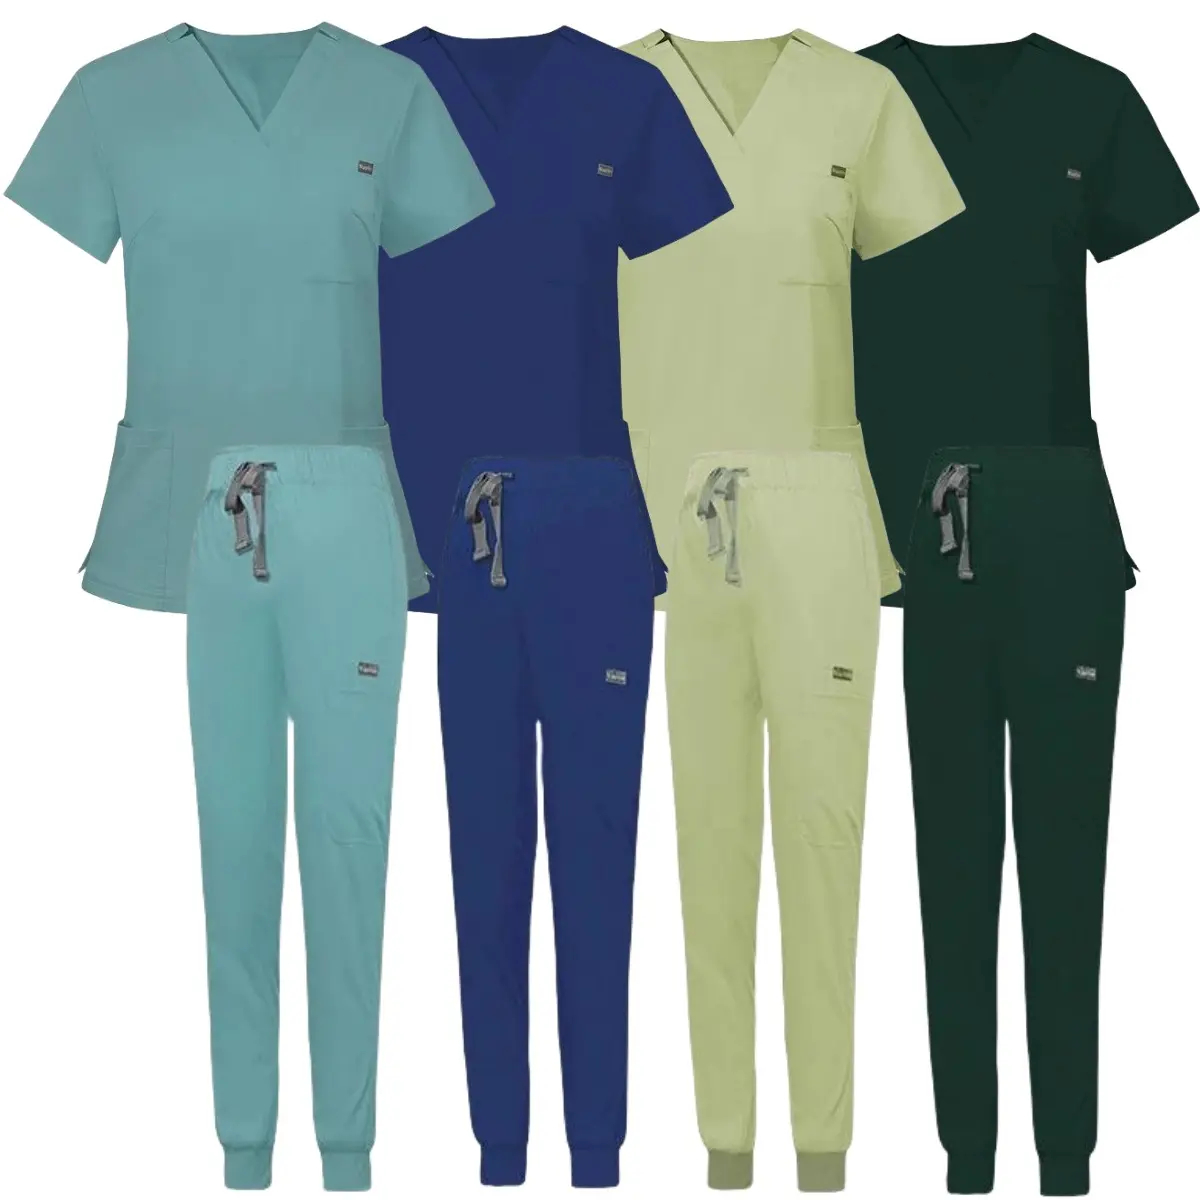 4 way stretch unique clearance conjuntos de uniformes scrubs uniforms sets for muslim women